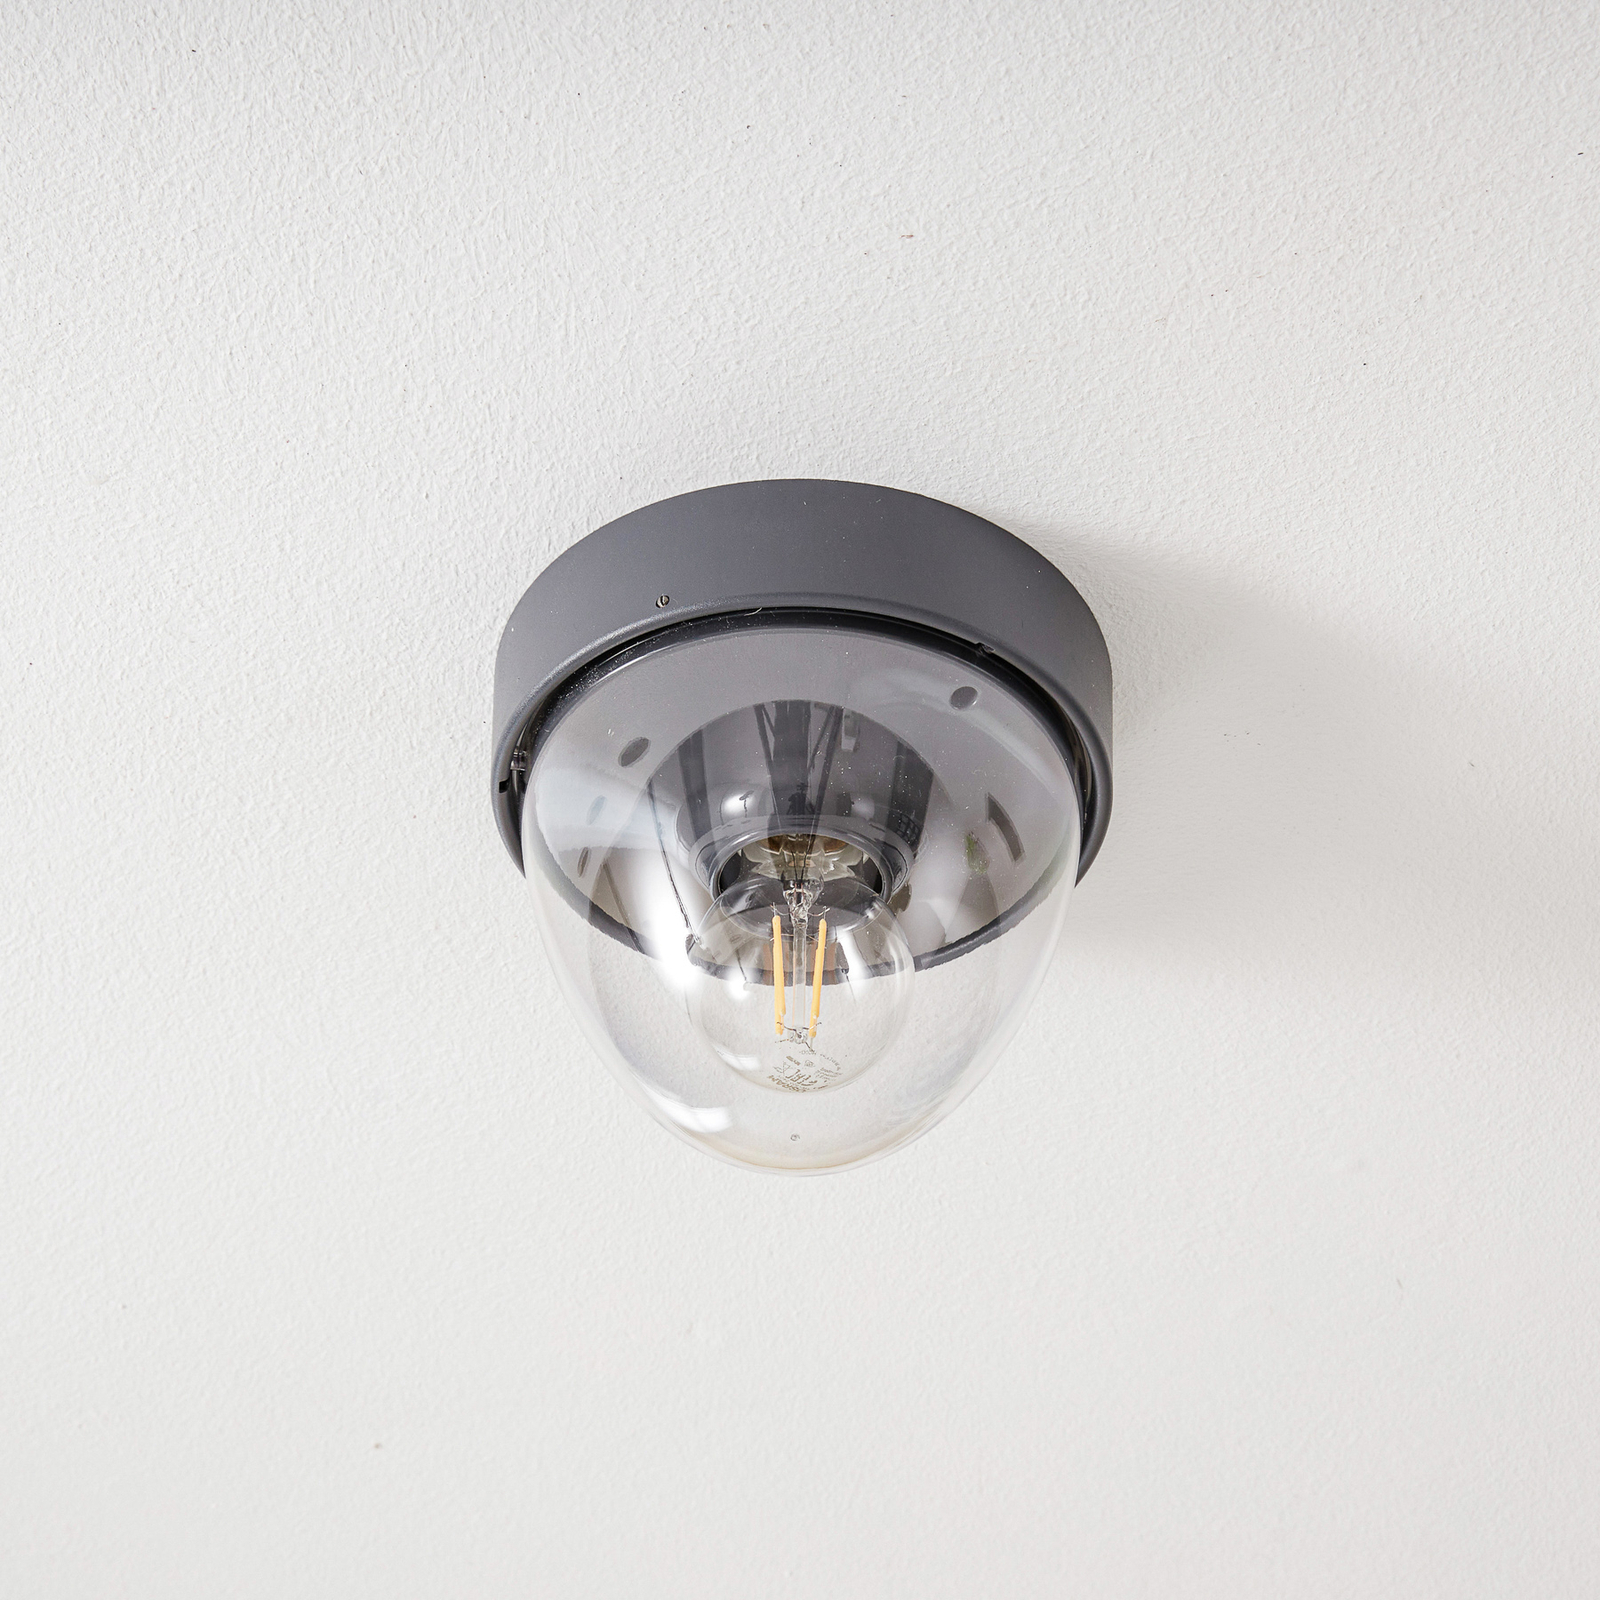 Nook graphite ceiling light with sensor